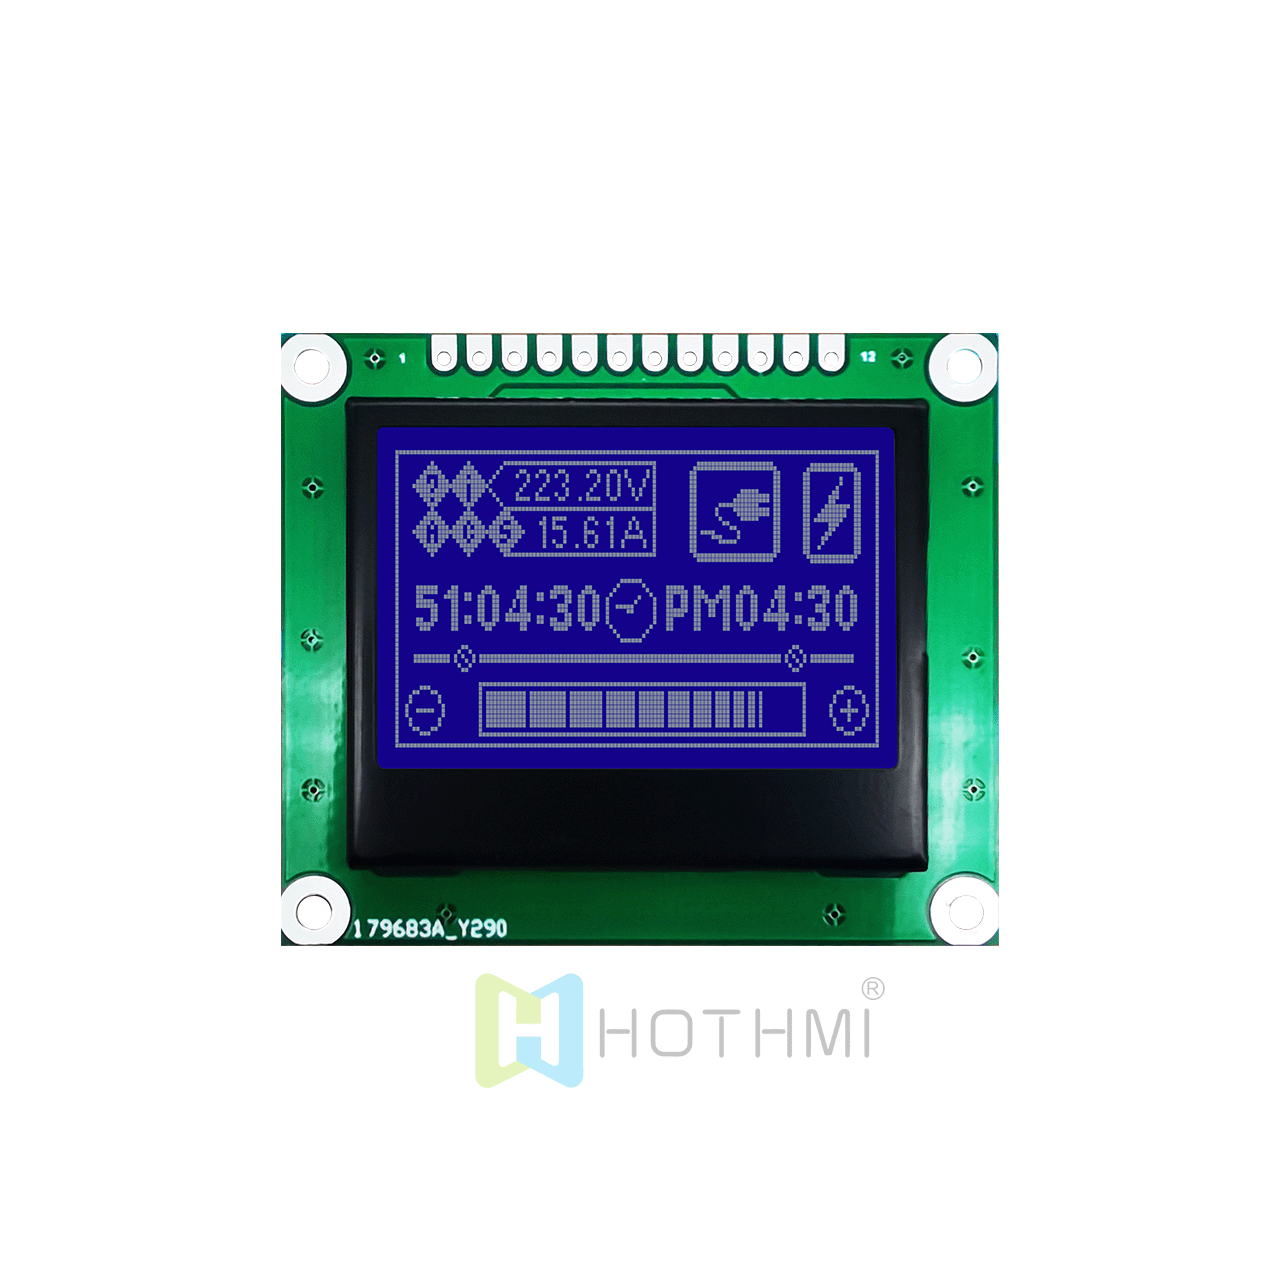 1.7英寸 图形LCD 128x64液晶显示屏 | SPI 接口 | 图形模块显示器 | STN 负显 | 全透偏光片 | 蓝底白字